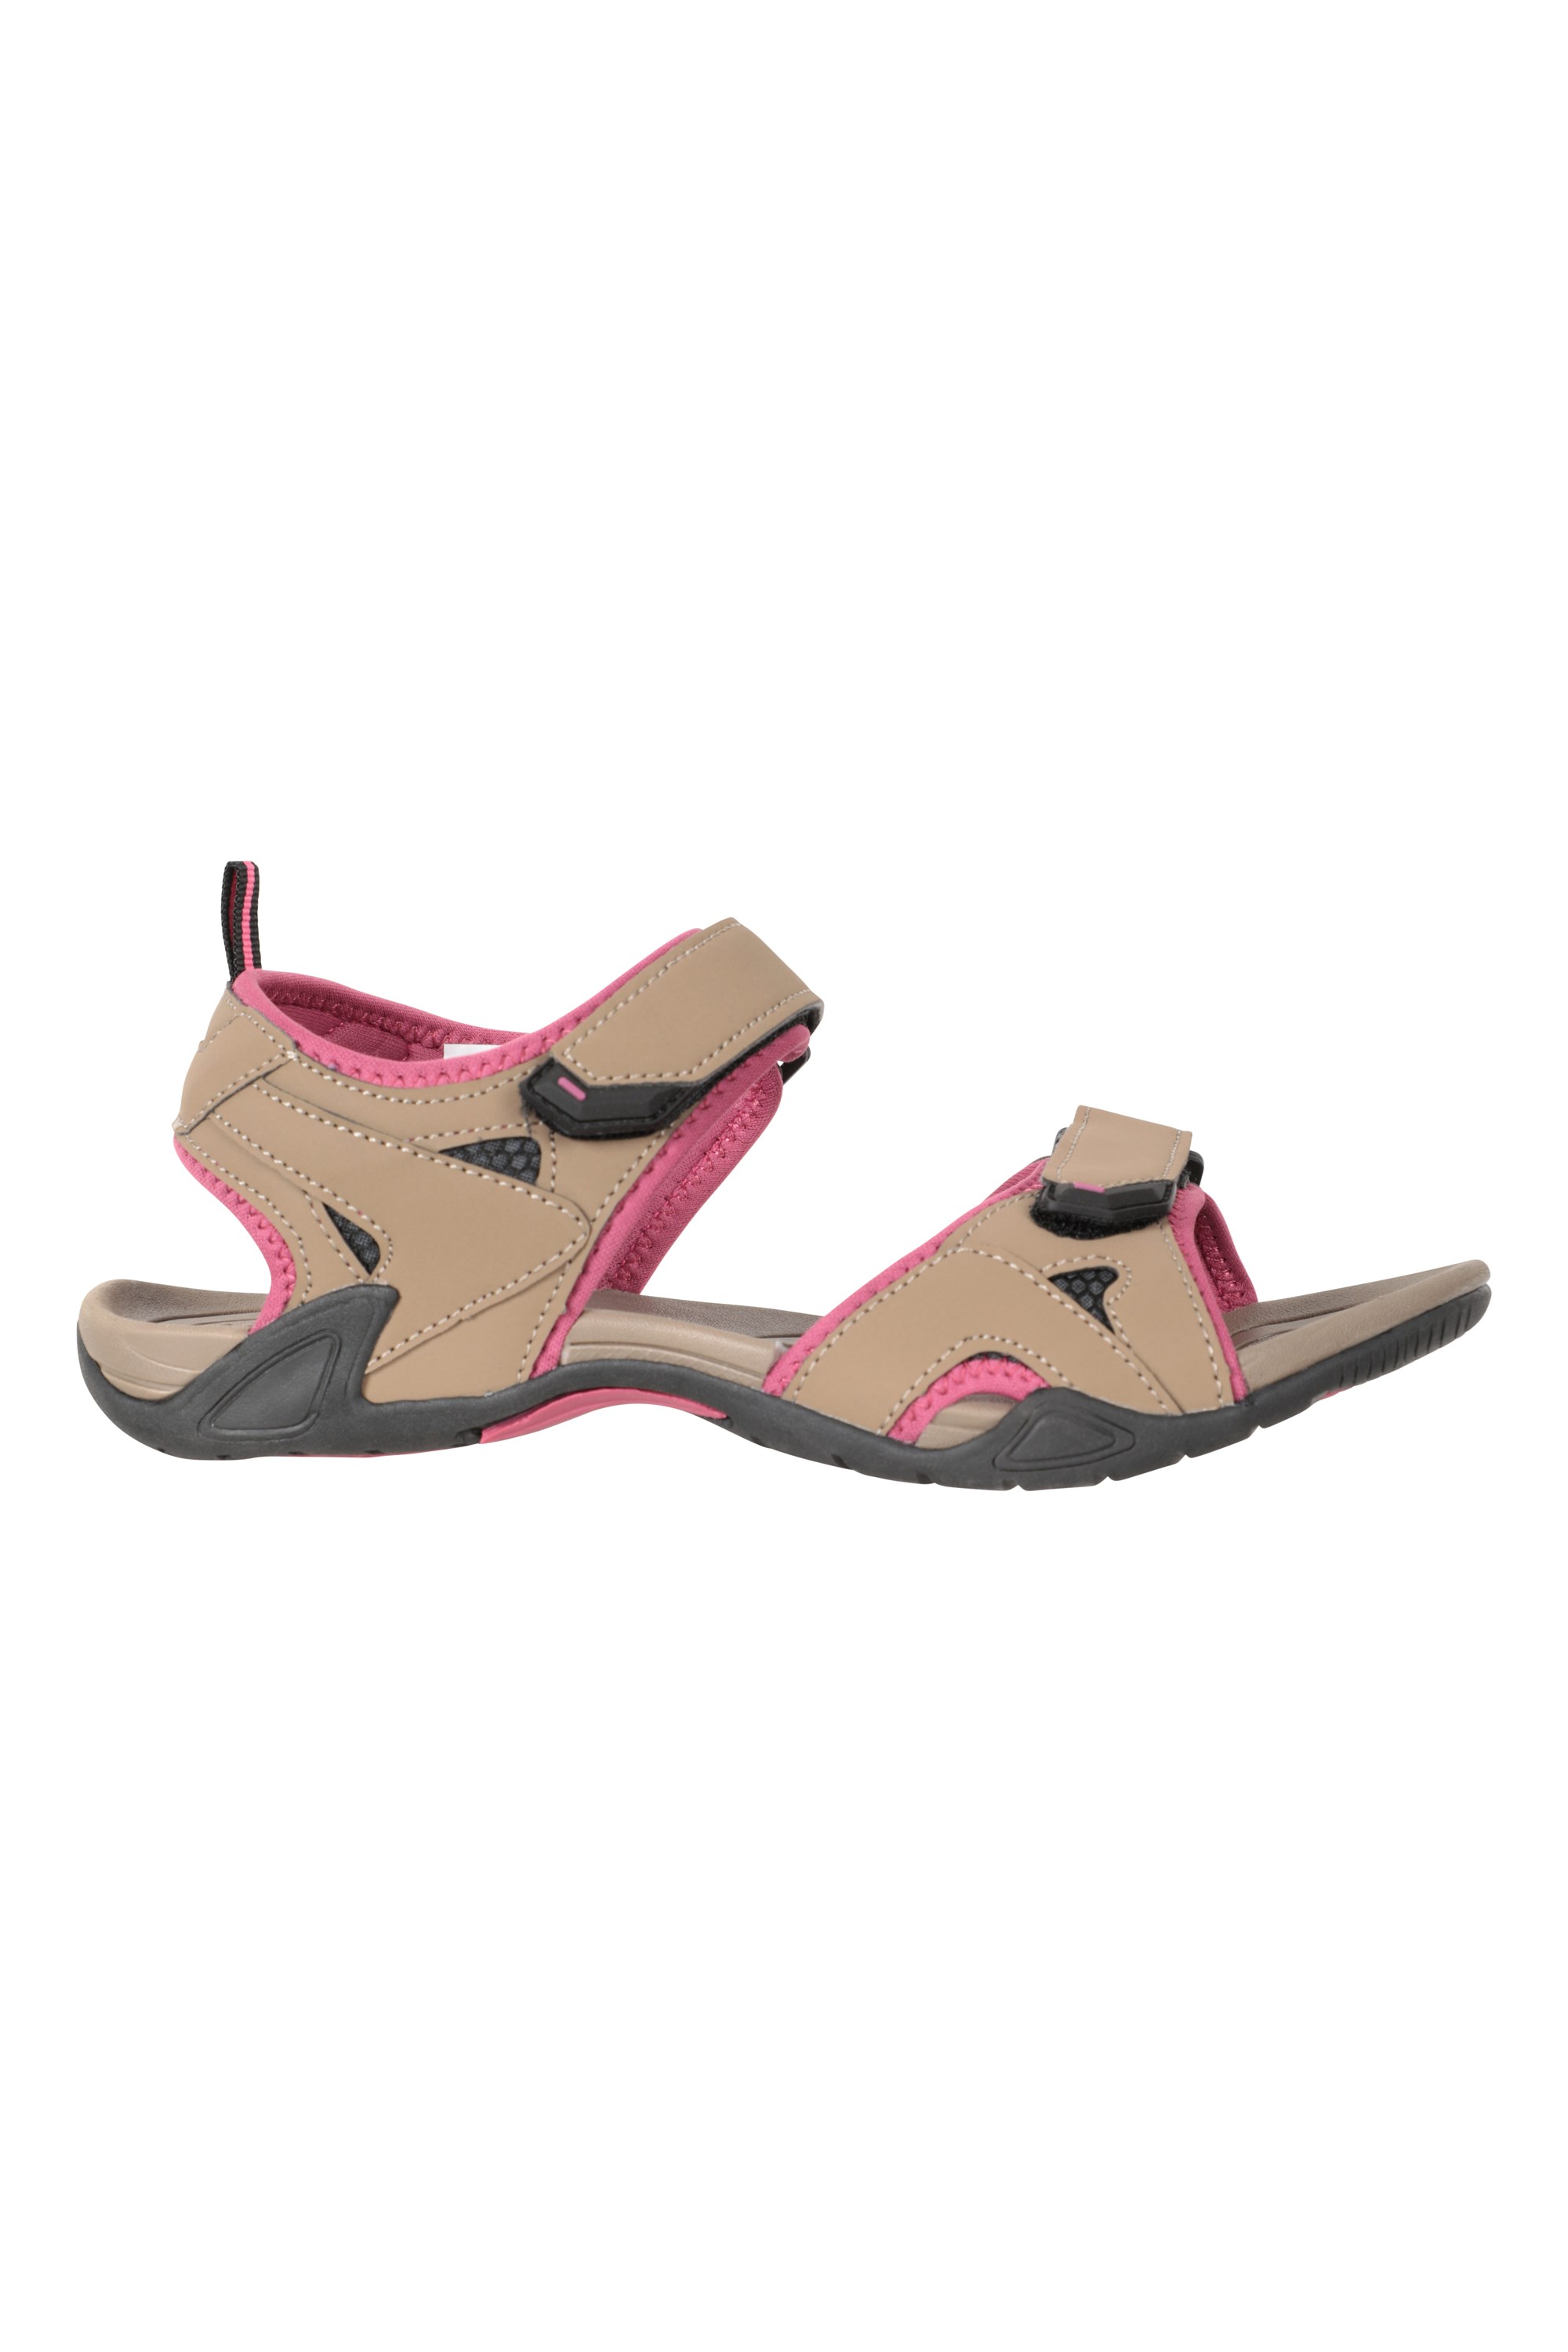 Buy Sandals for men SS 580 - Sandals Slippers for Men | Relaxo